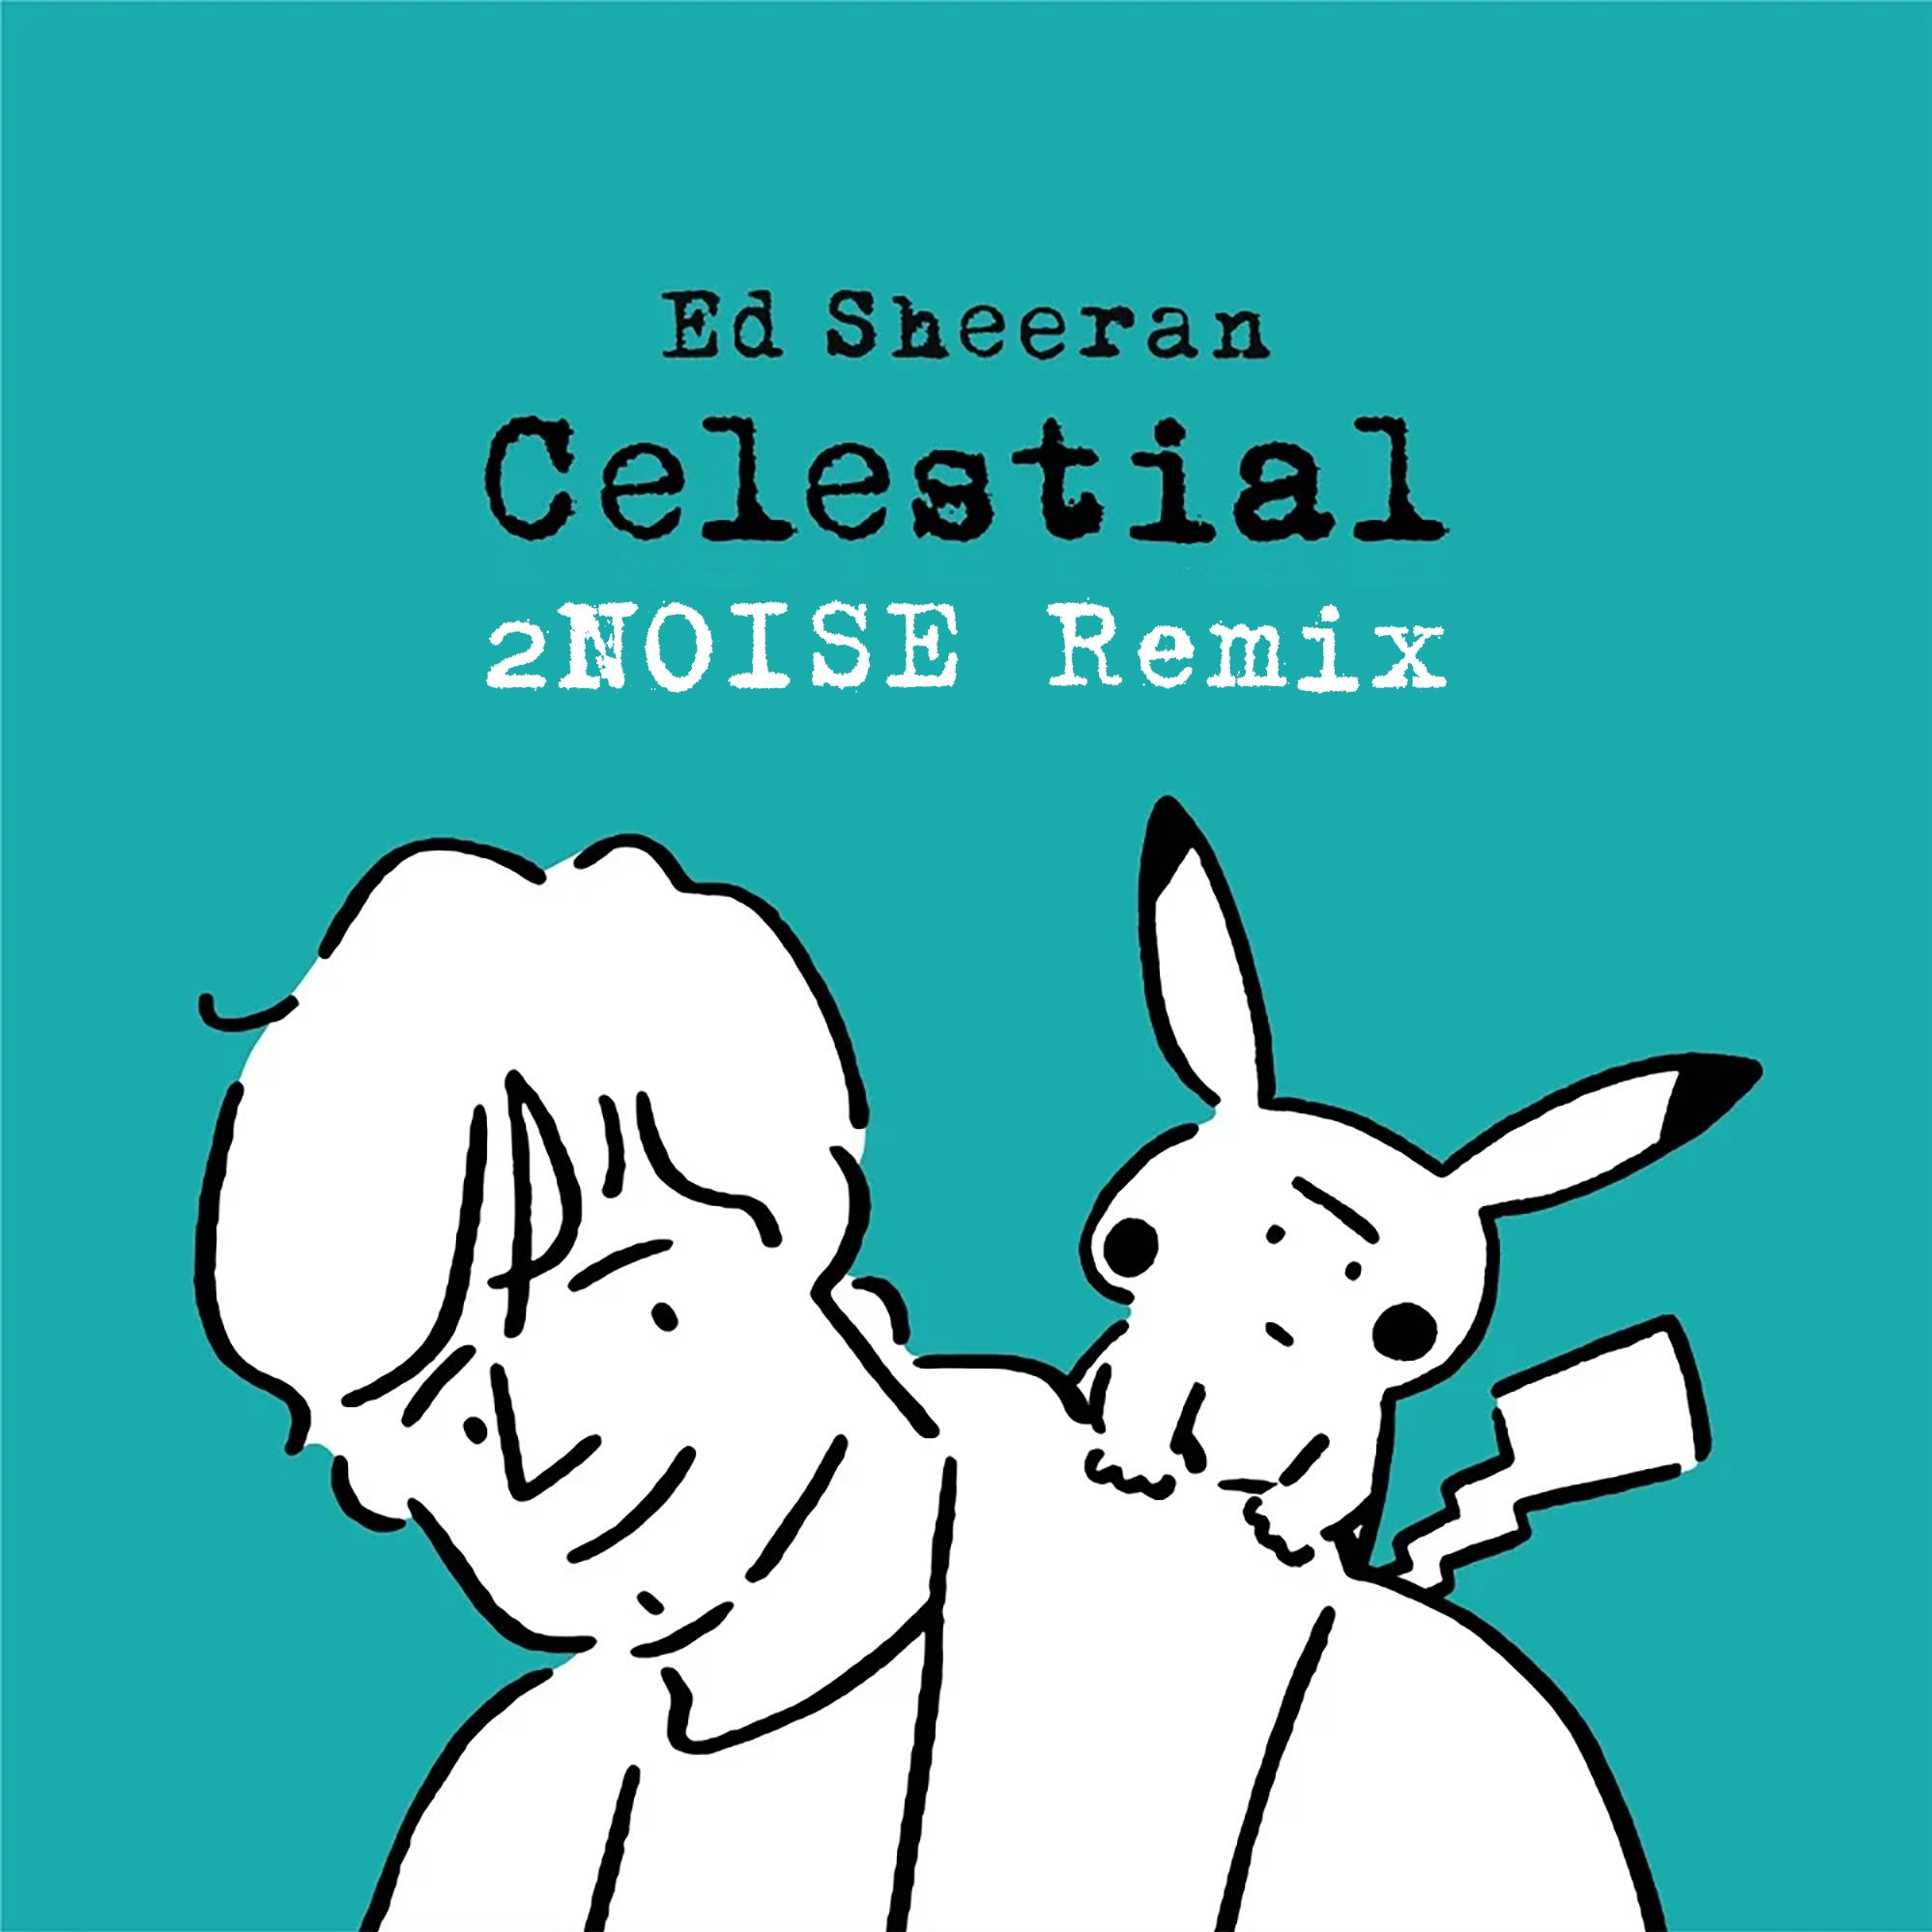 ডাউনলোড করুন Ed Sheeran - Celestial (2NOISE Remix) [Progressive]